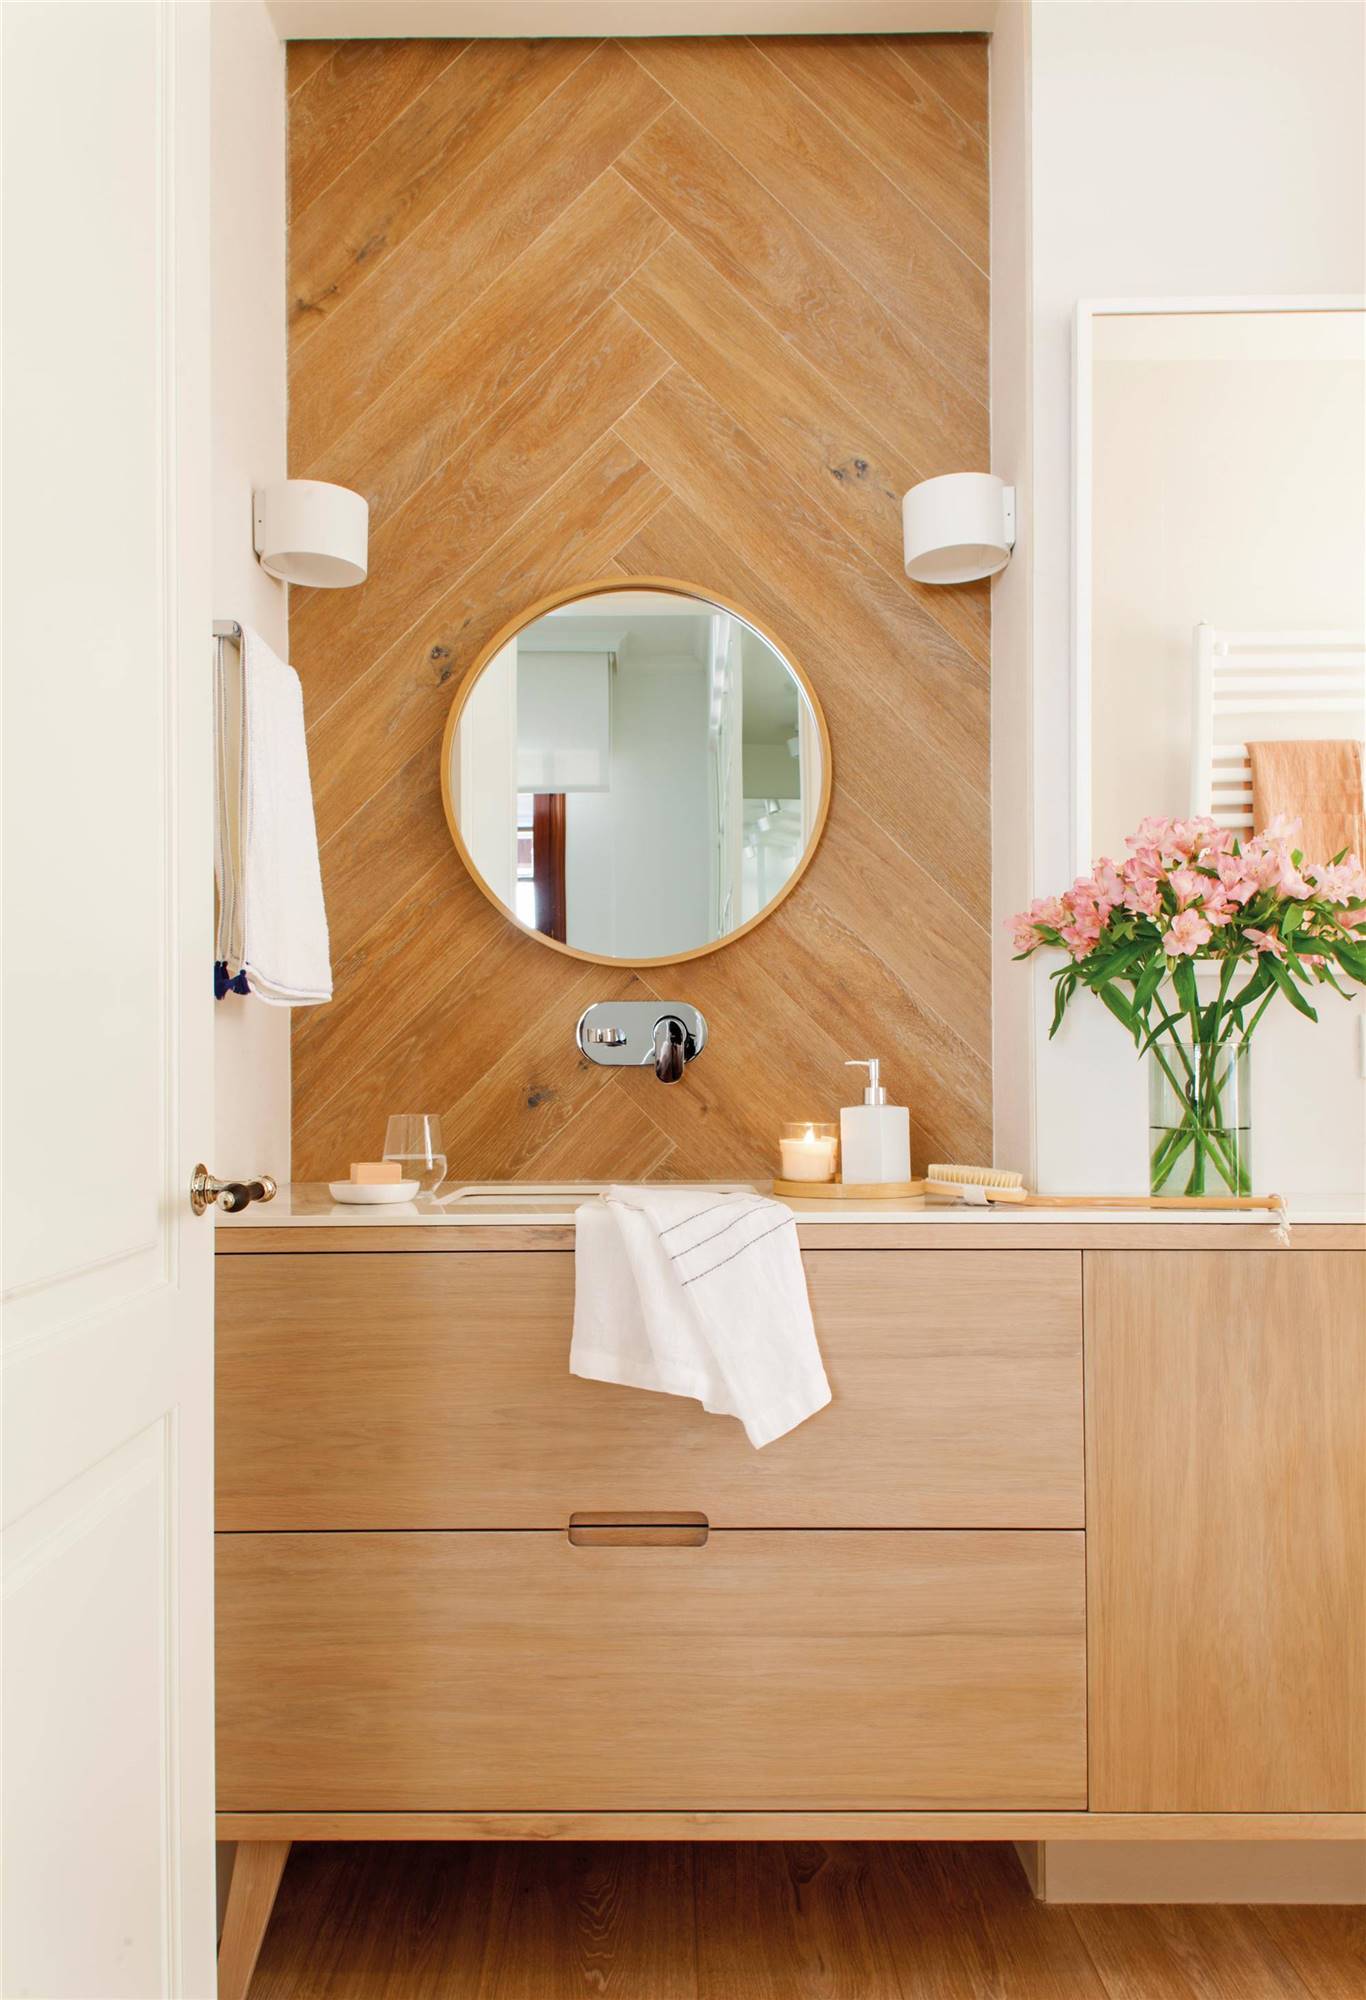 Baño con revestimiento de pared de madera a juego con el mueble bajolavabo.